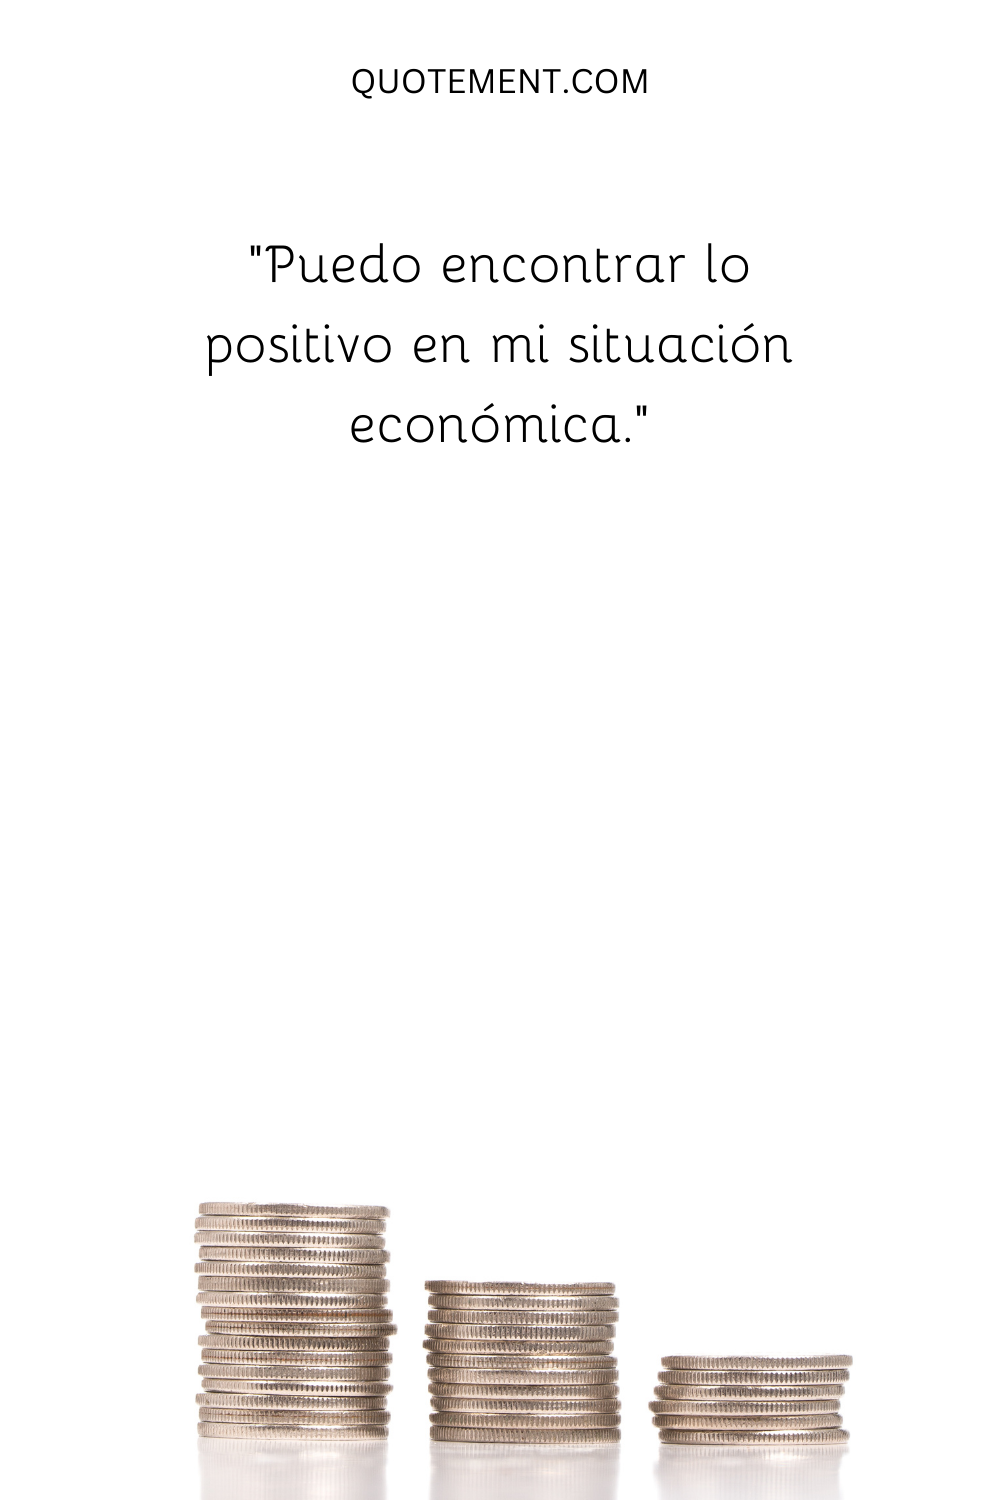 "Puedo encontrar lo positivo en mi situación económica".